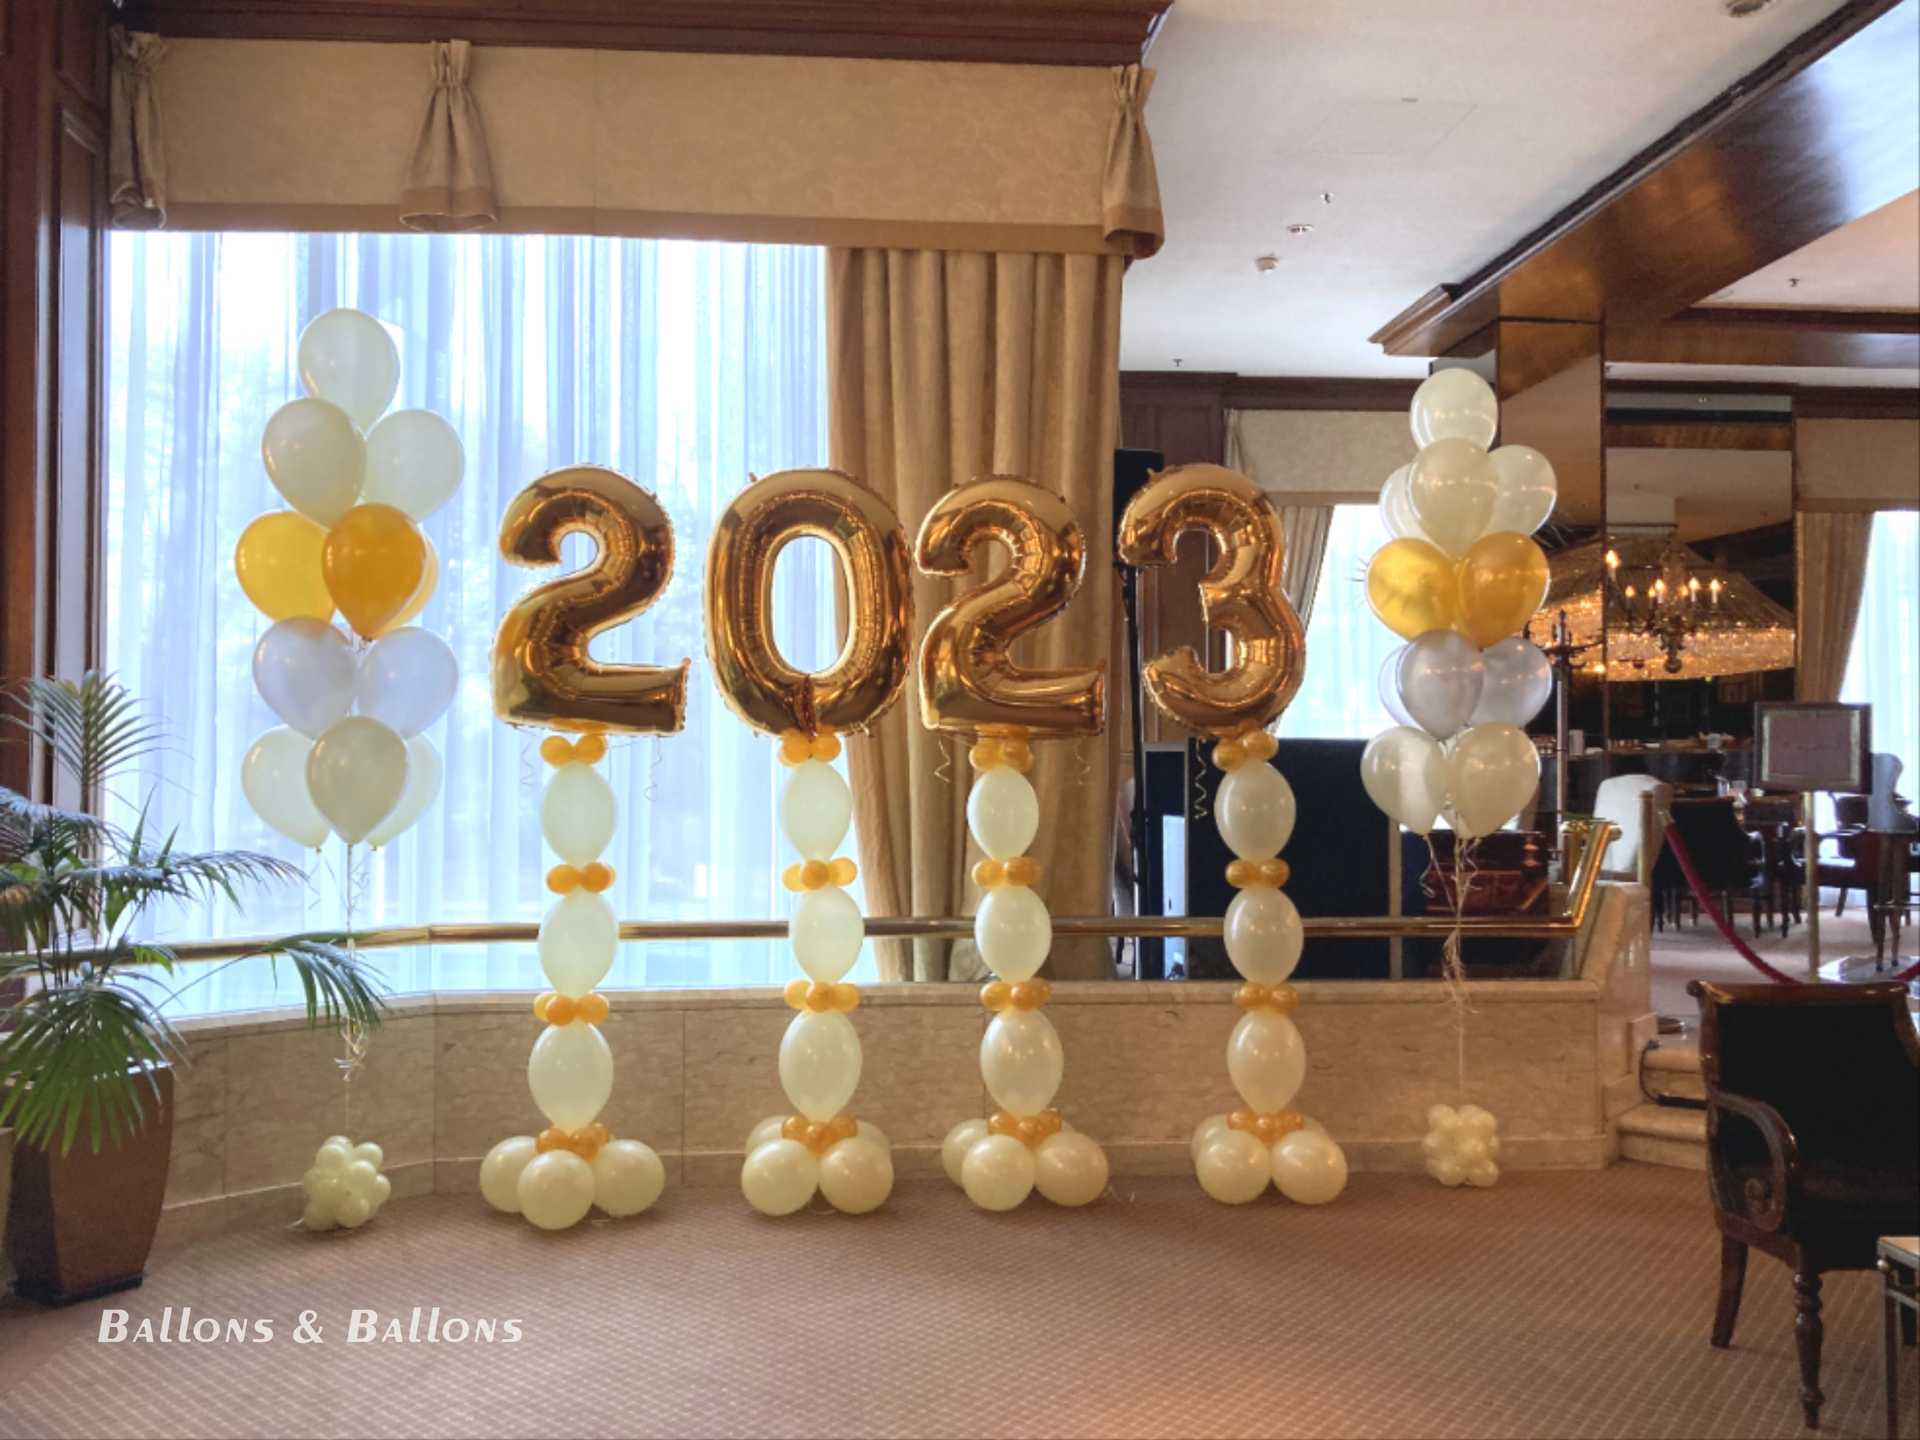 Ballons mit der Jahreszahl 2020 in einem Raum in Wien.